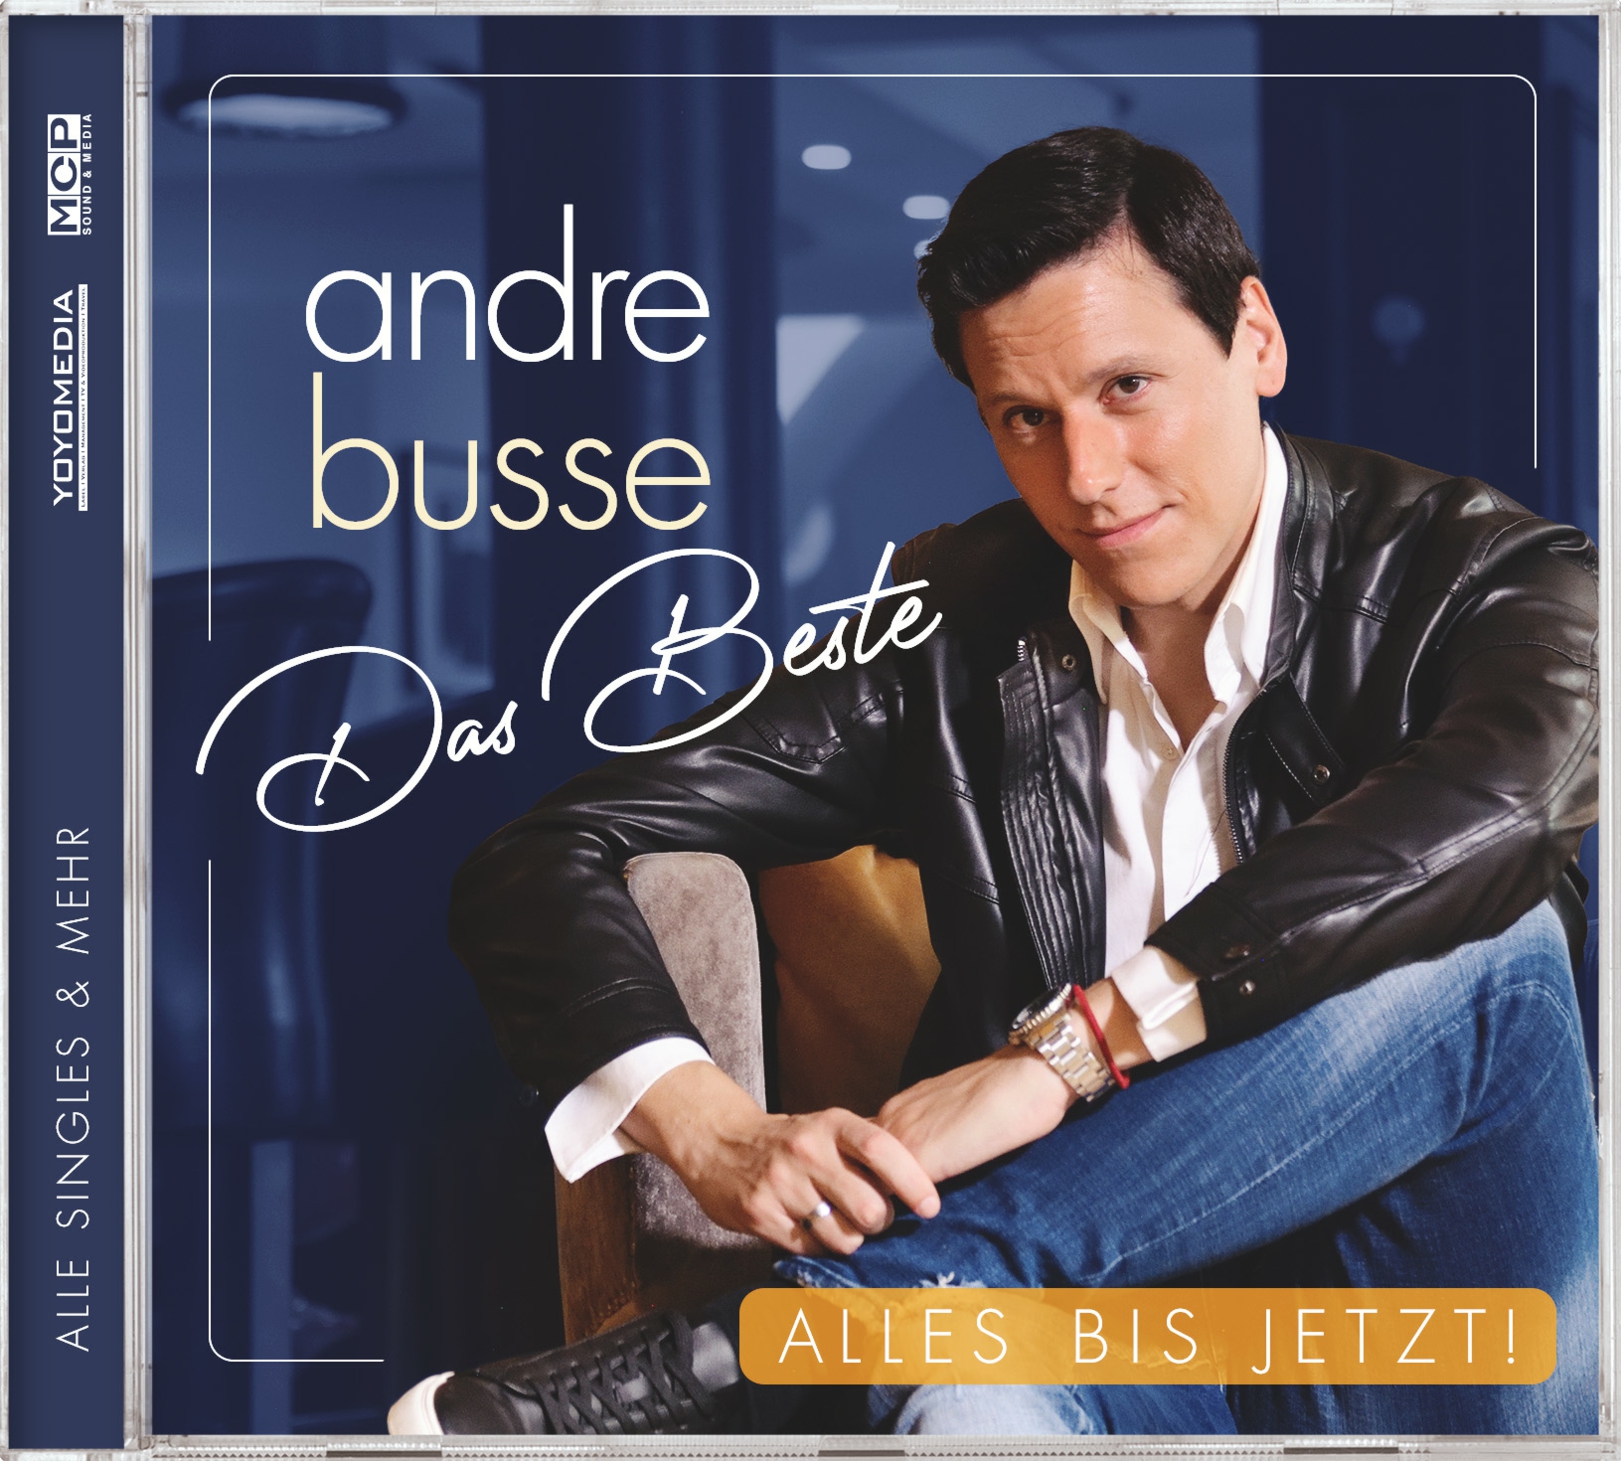 ANDRE BUSSE * Das Beste – Alles bis jetzt (CD)